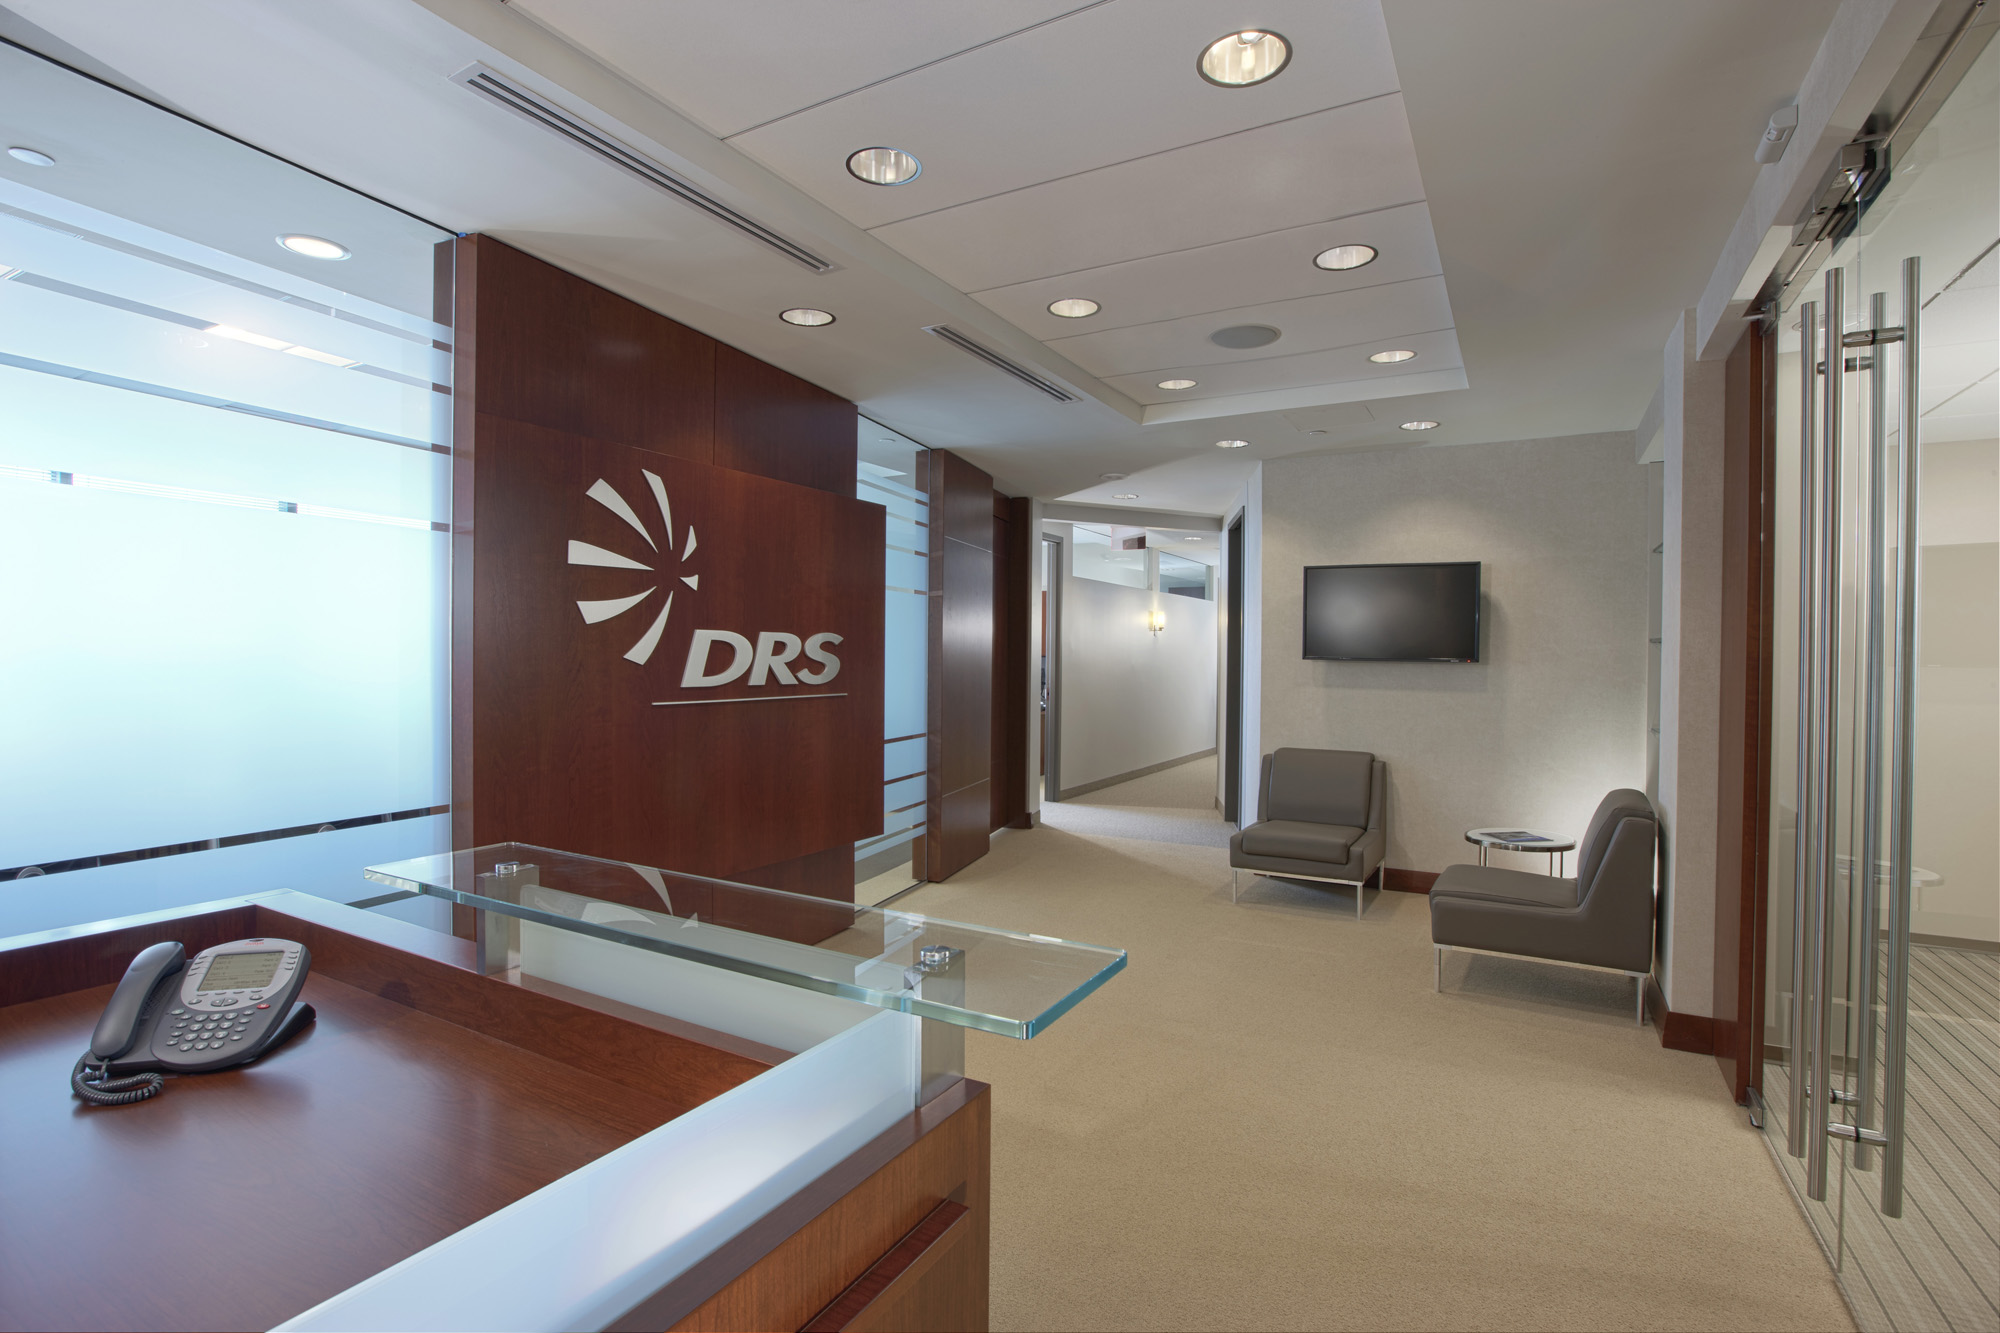 DRS VA Office Interior Image R121282.jpg